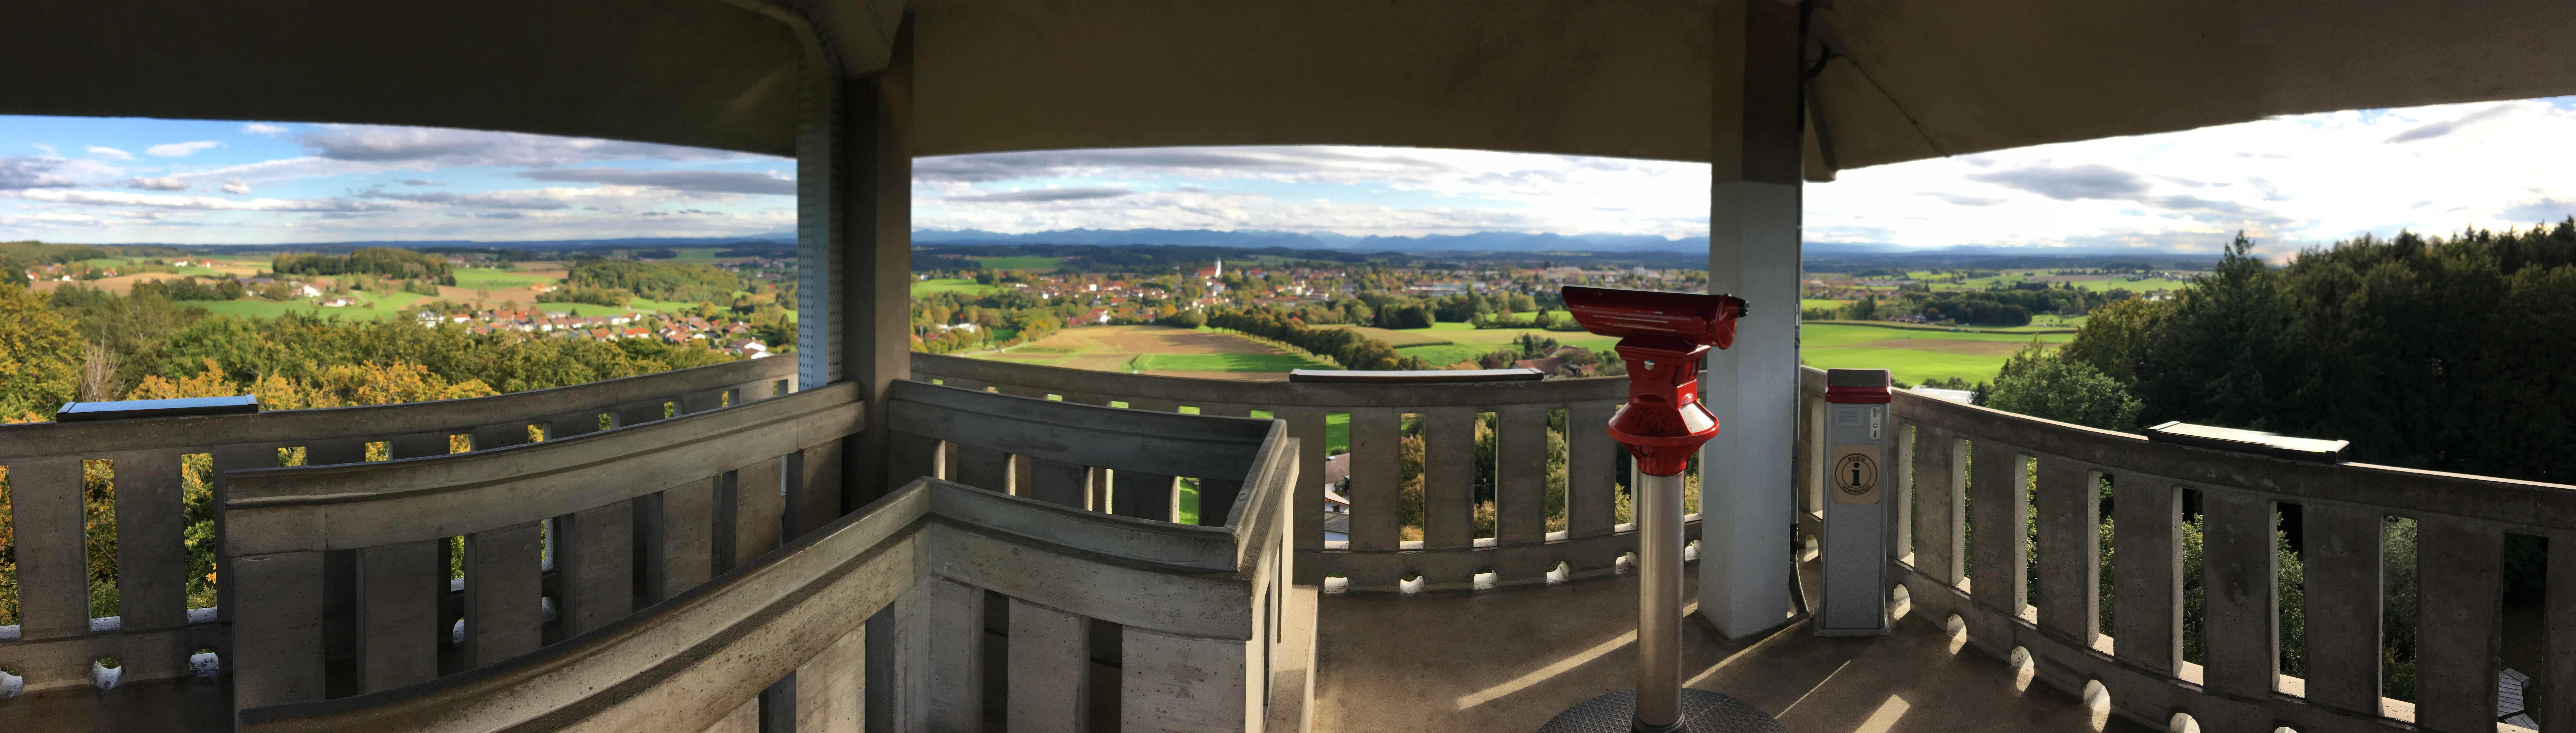 Panorama vom Turm